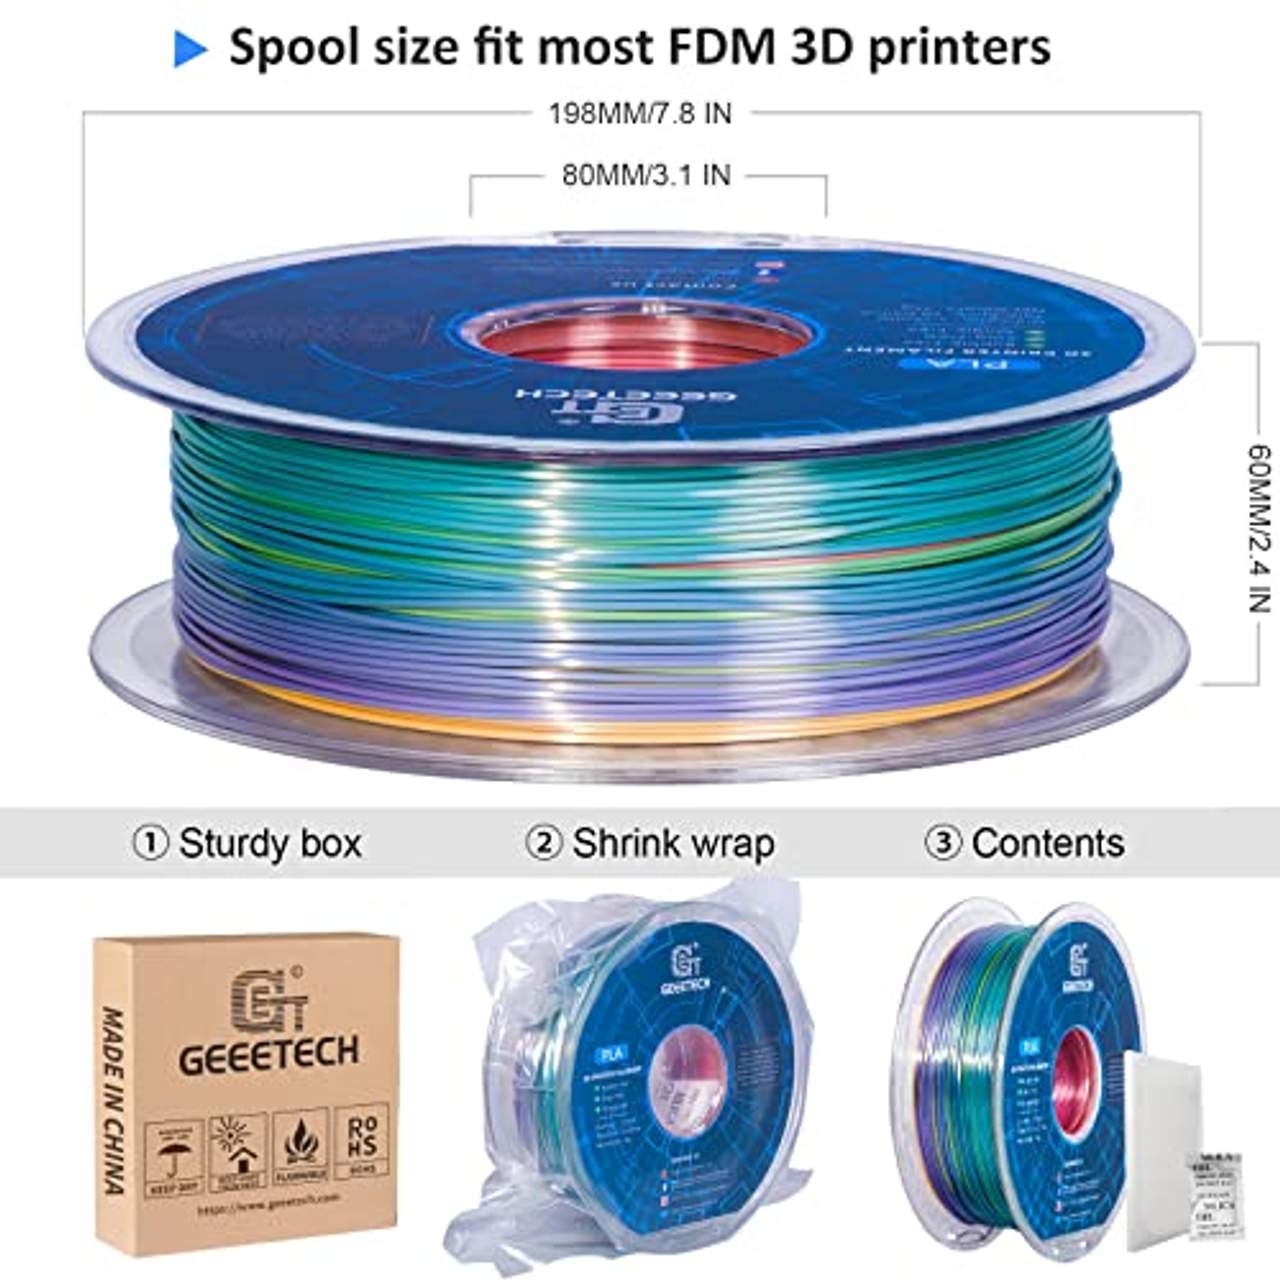 PLA filament 1.75mm Multicolor